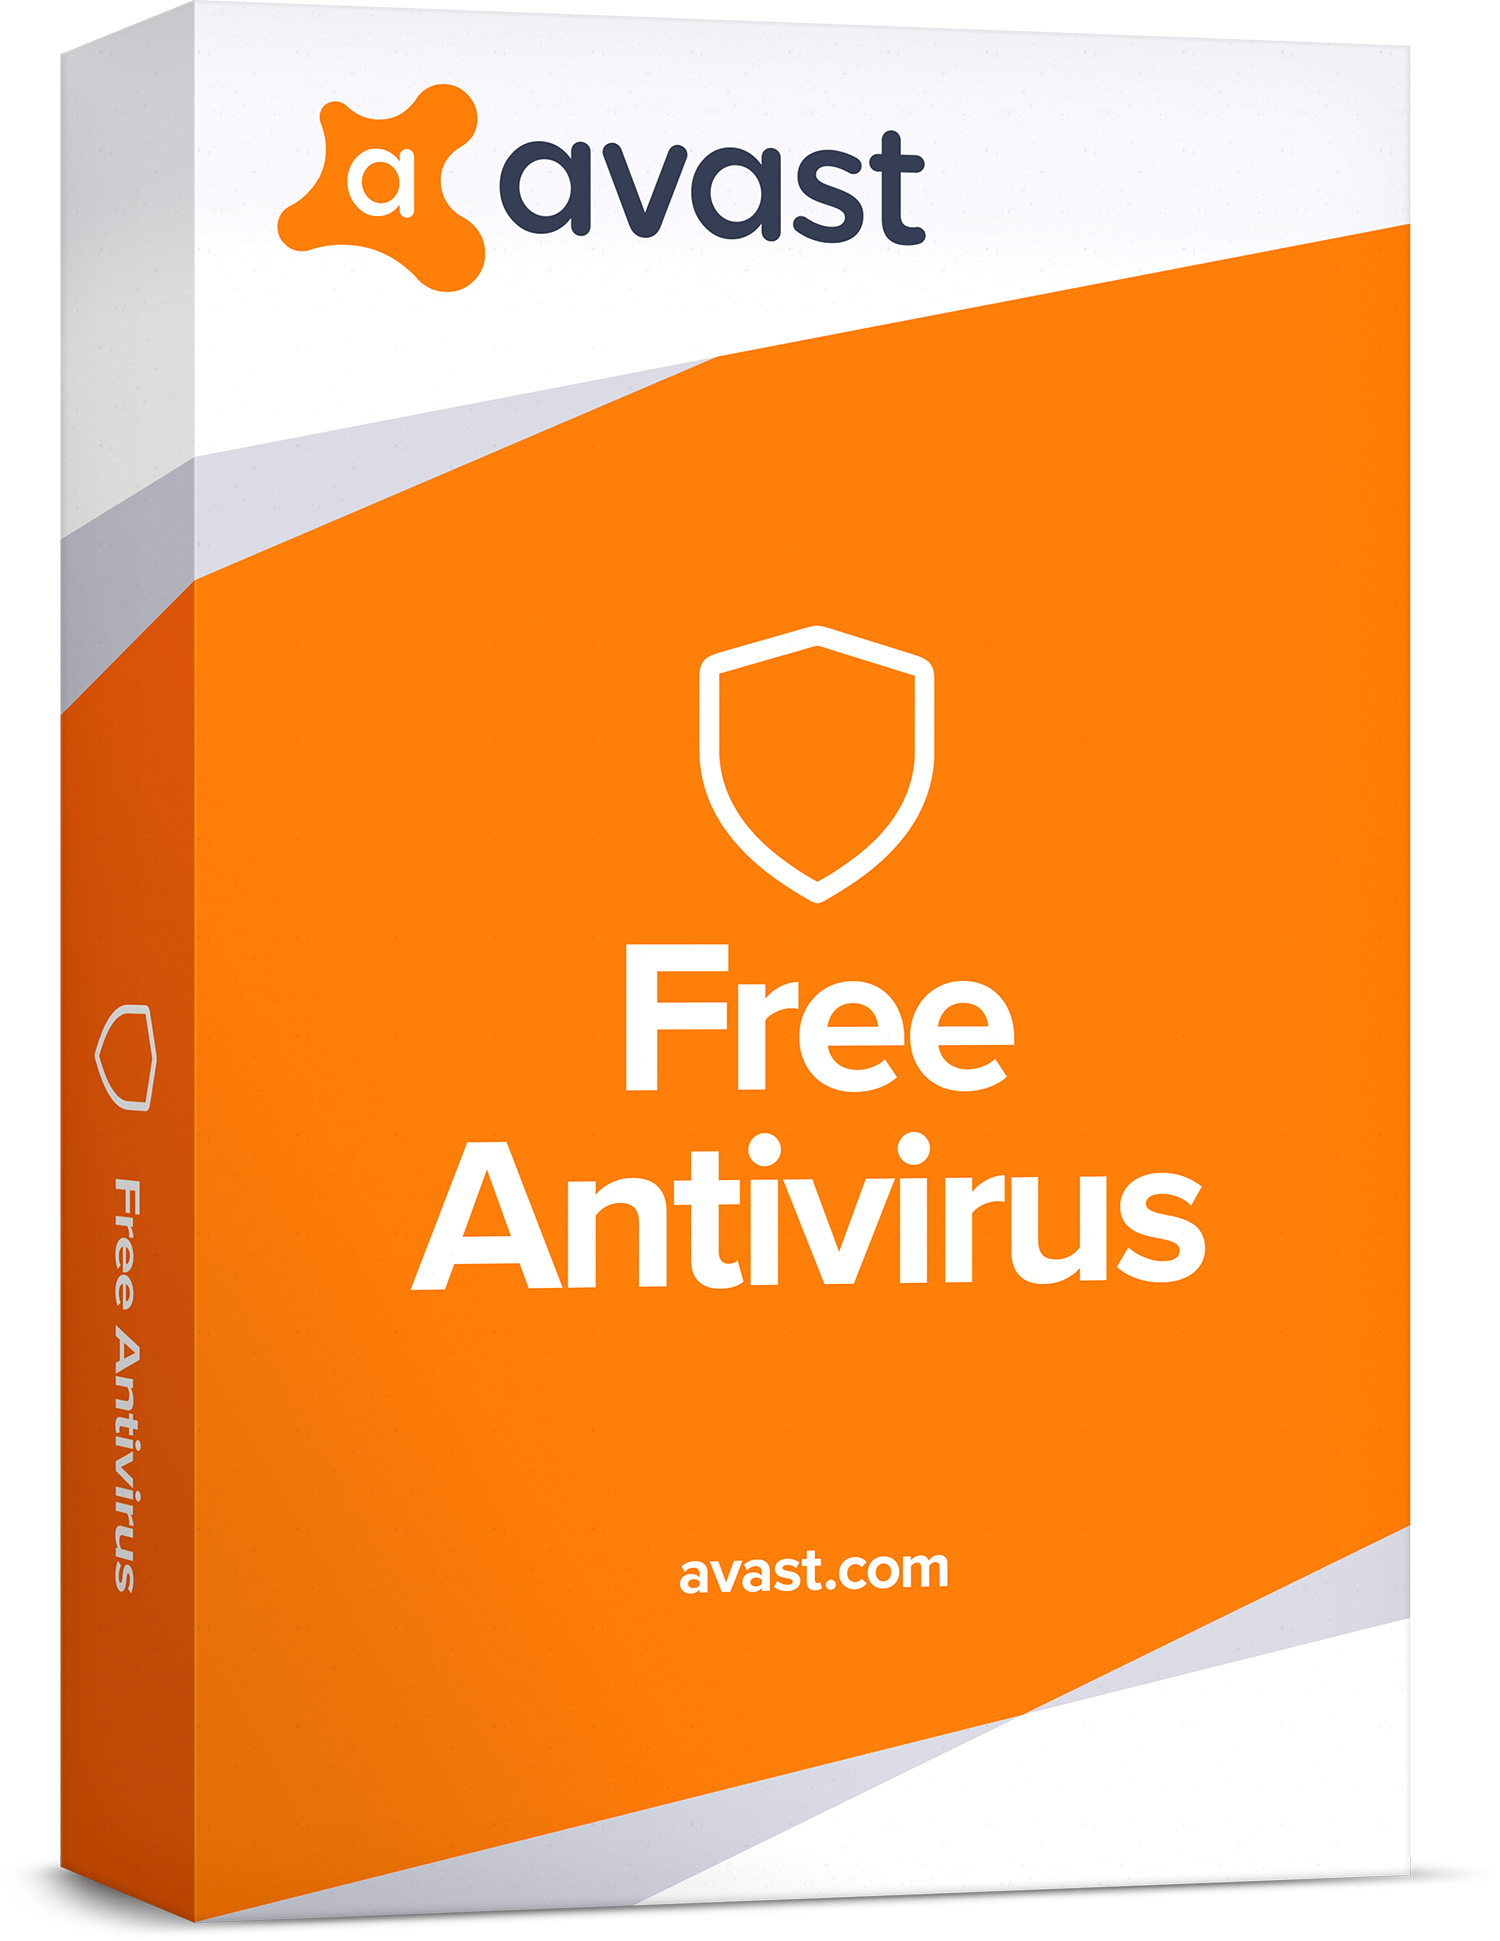 Avast Free Antivirus PC + ключи Последняя версия для Windows